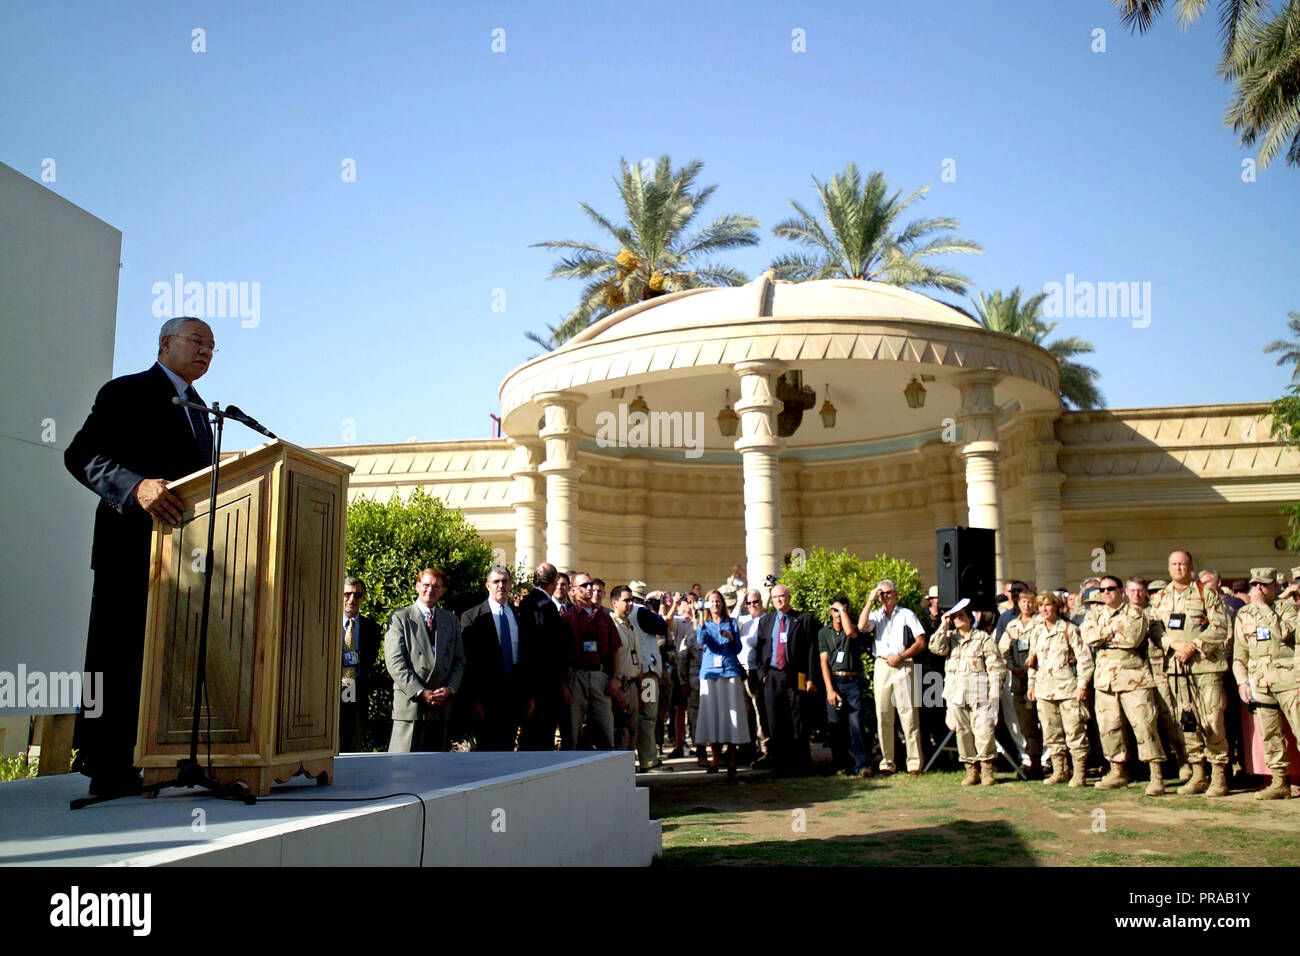 Der Herr Abgeordnete Colin L. Powell (links), US-Außenminister, Adressen ein Publikum außerhalb der US-Botschaft in den Irak in Bagdad, Provinz Bagdad, Irak (IRQ), während der Operation Iraqi Freedom. Stockfoto